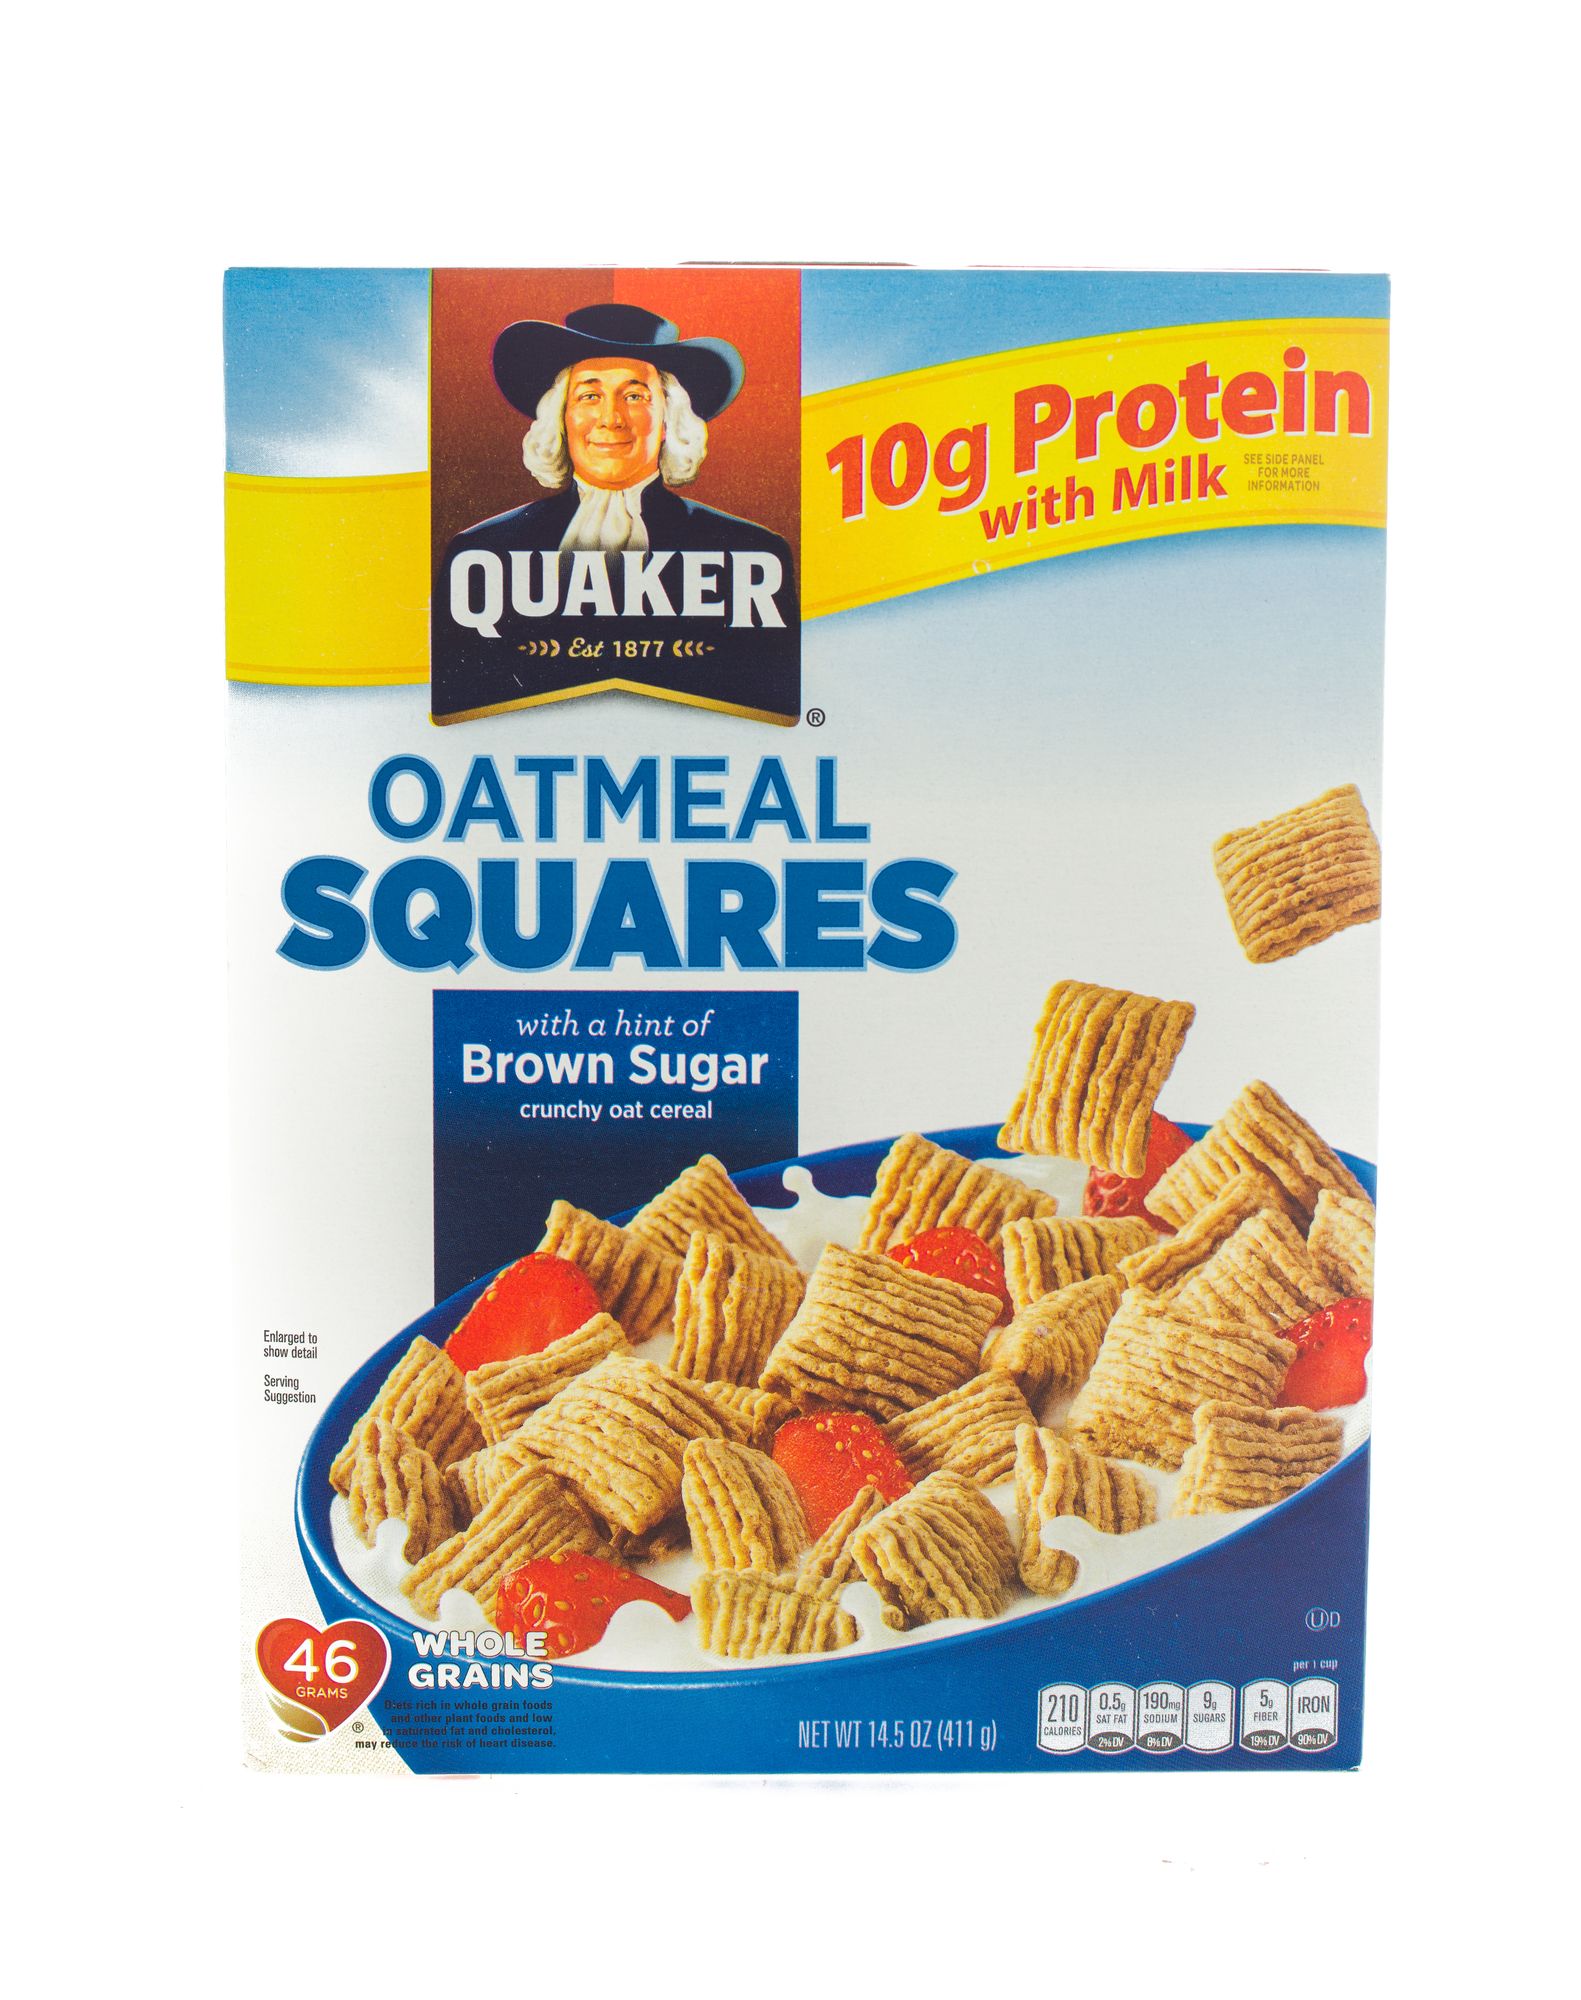 https://s40123.pcdn.co/wp-content/uploads/2019/01/quaker-oatmeal-squares.jpg.optimal.jpg